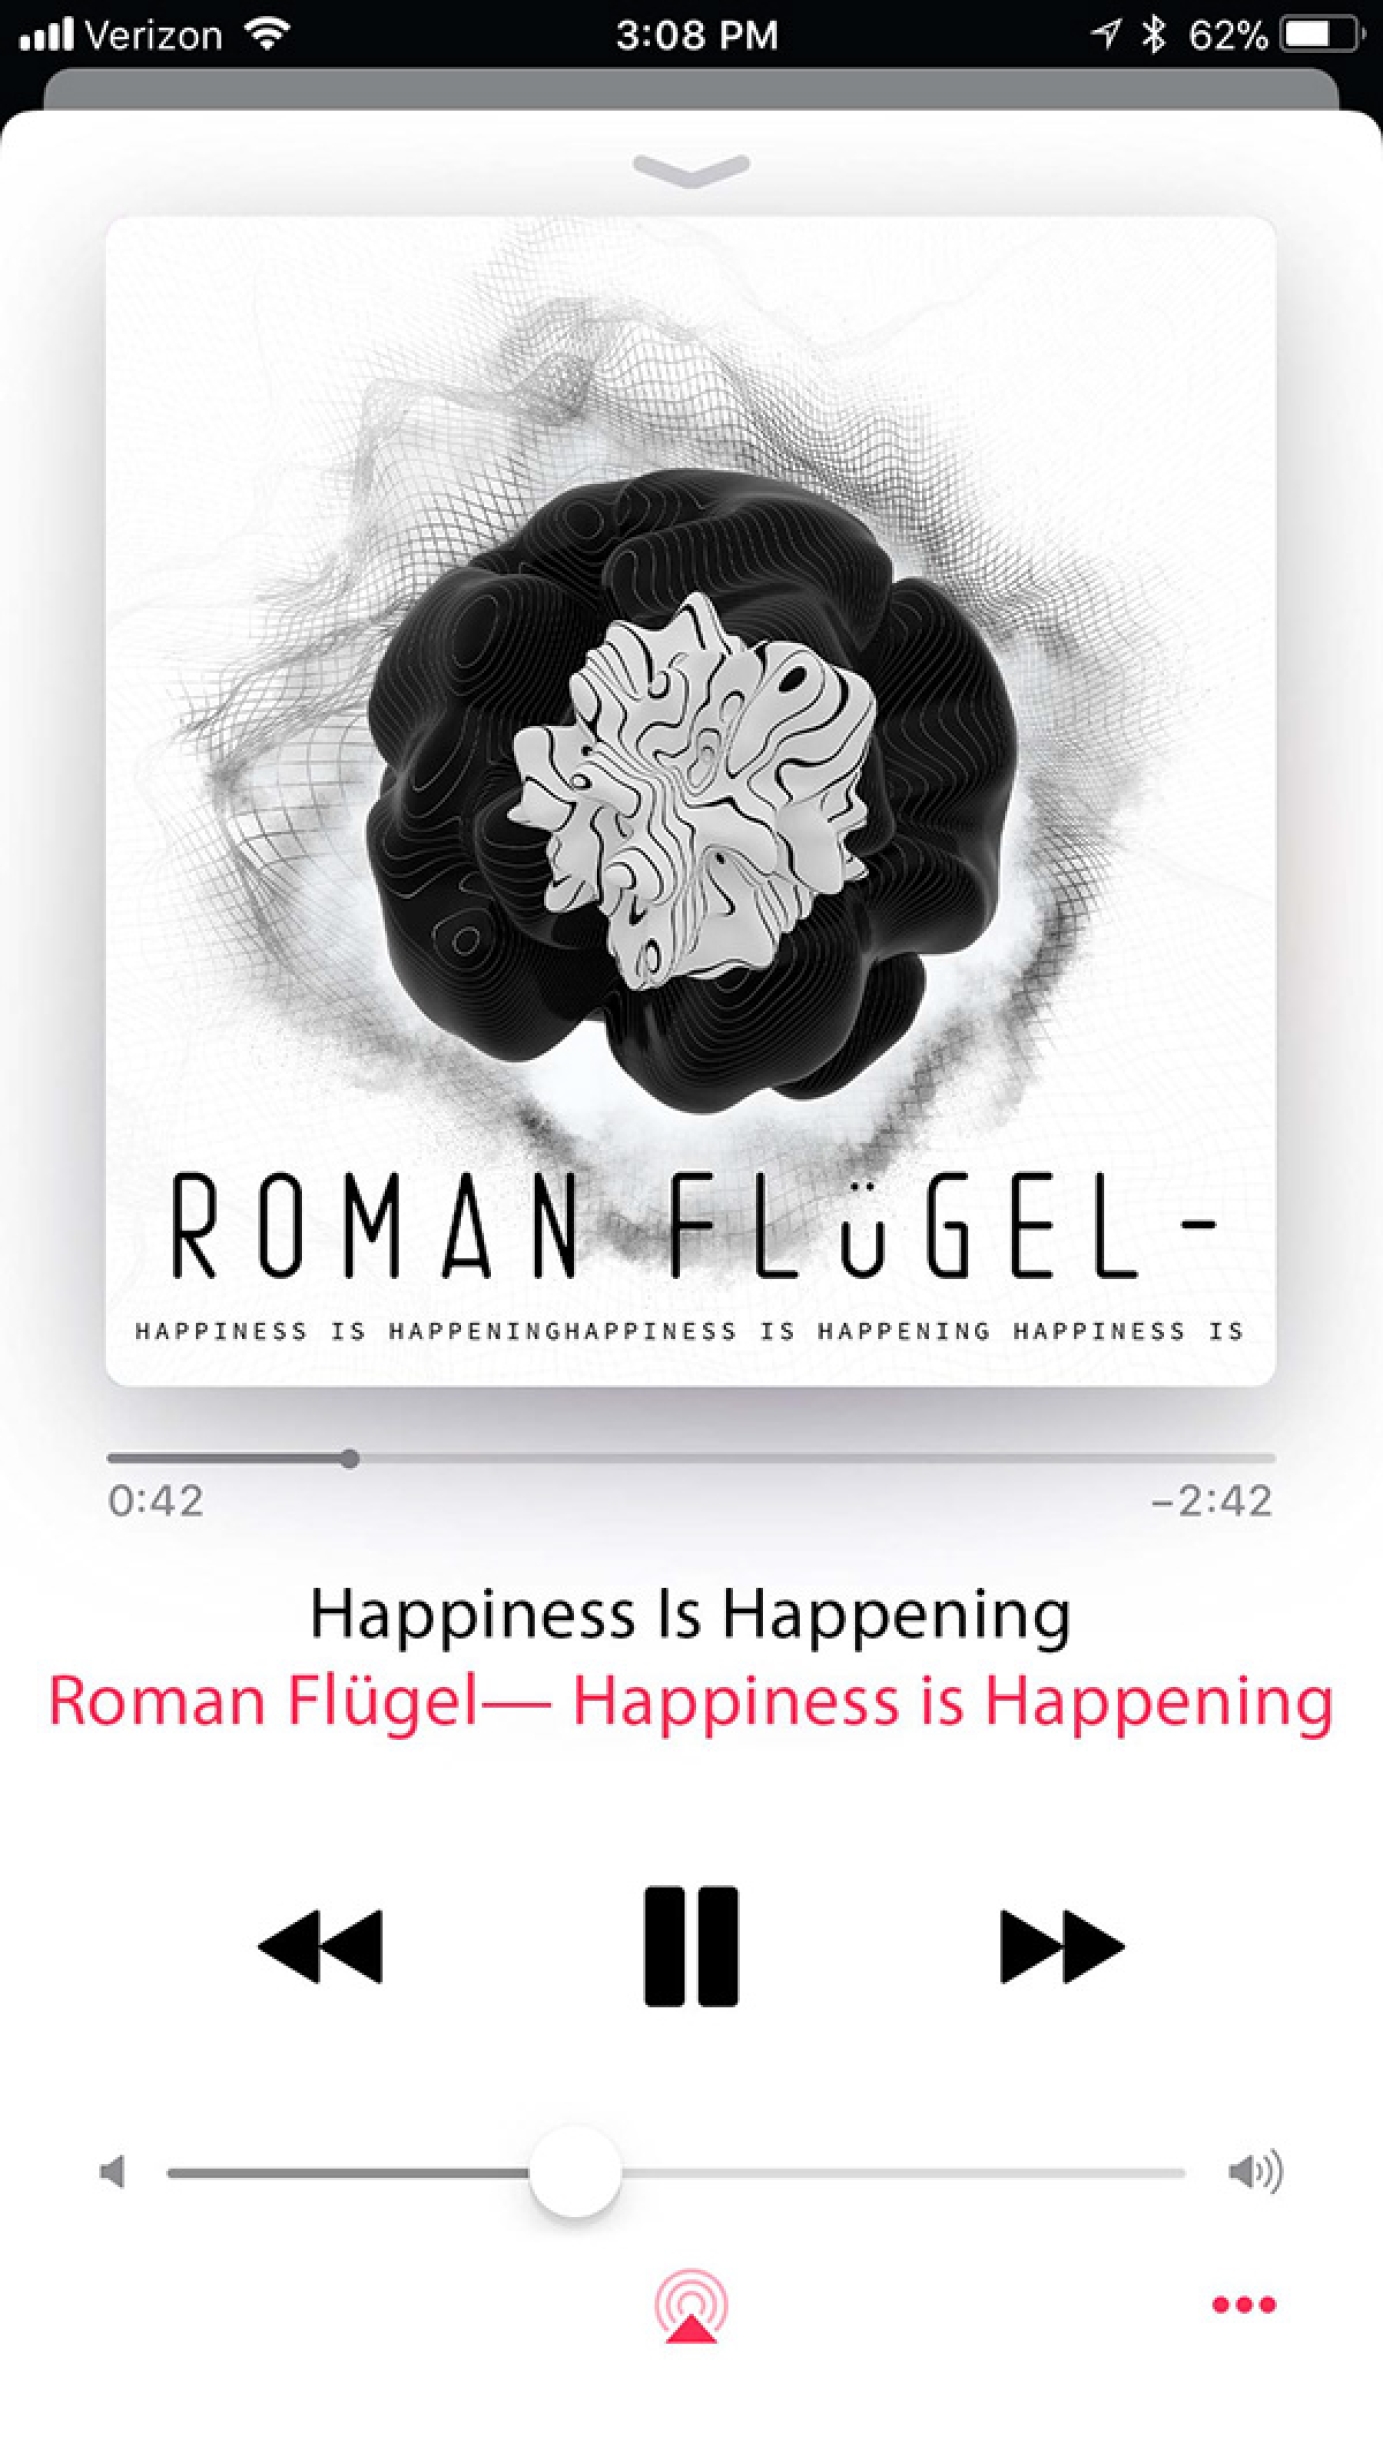 Roman Fugel